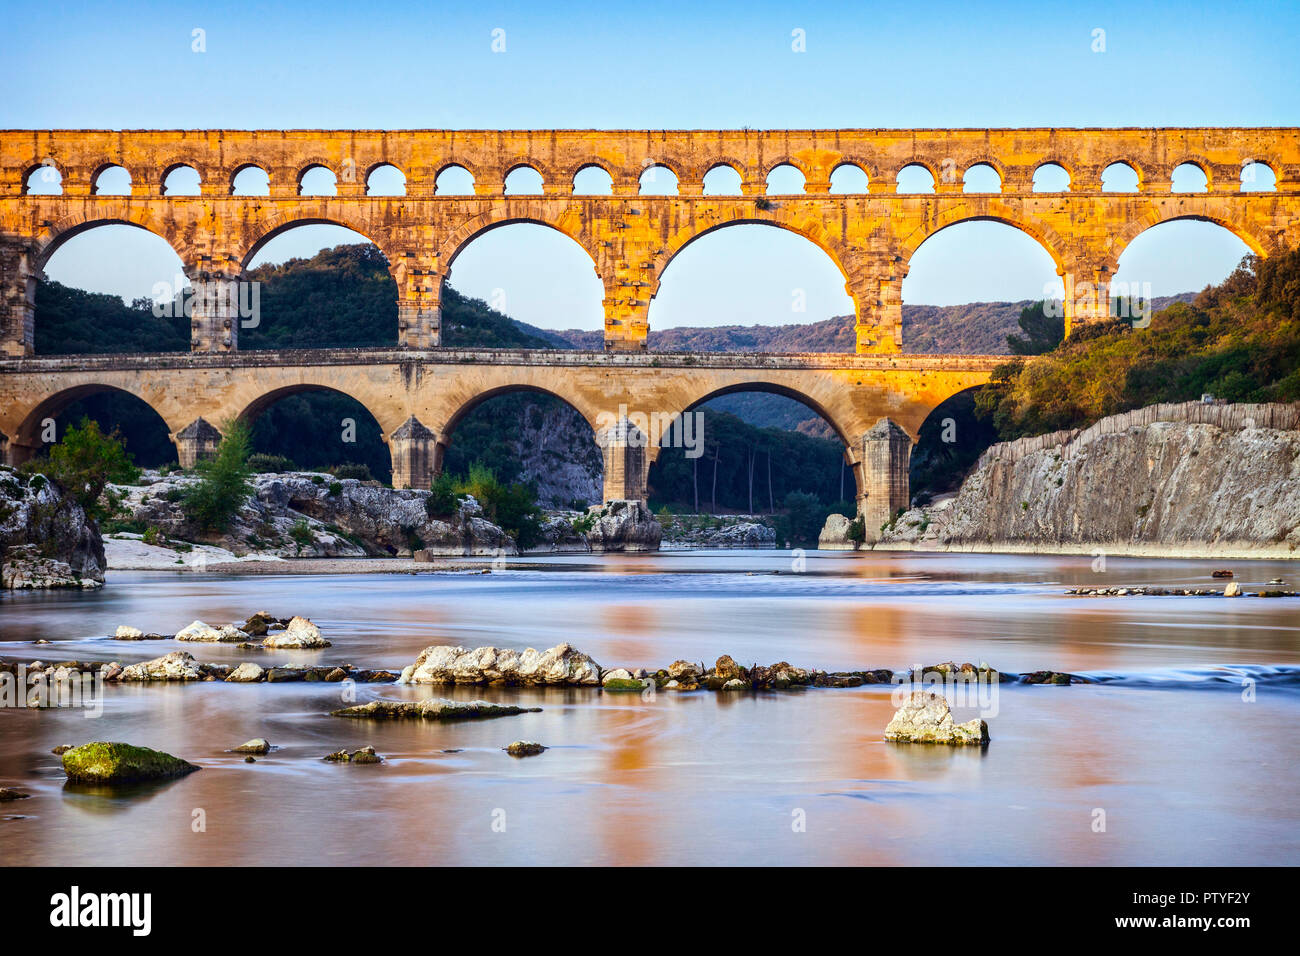 Römische Aquädukt Pont du Gard Languedoc-Roussillon Frankreich, im frühen Herbst. Dies wurde durch die Römer Im ersten Jahrhundert N.CHR. gebaut, um Wasser von der Uze durchführen Stockfoto